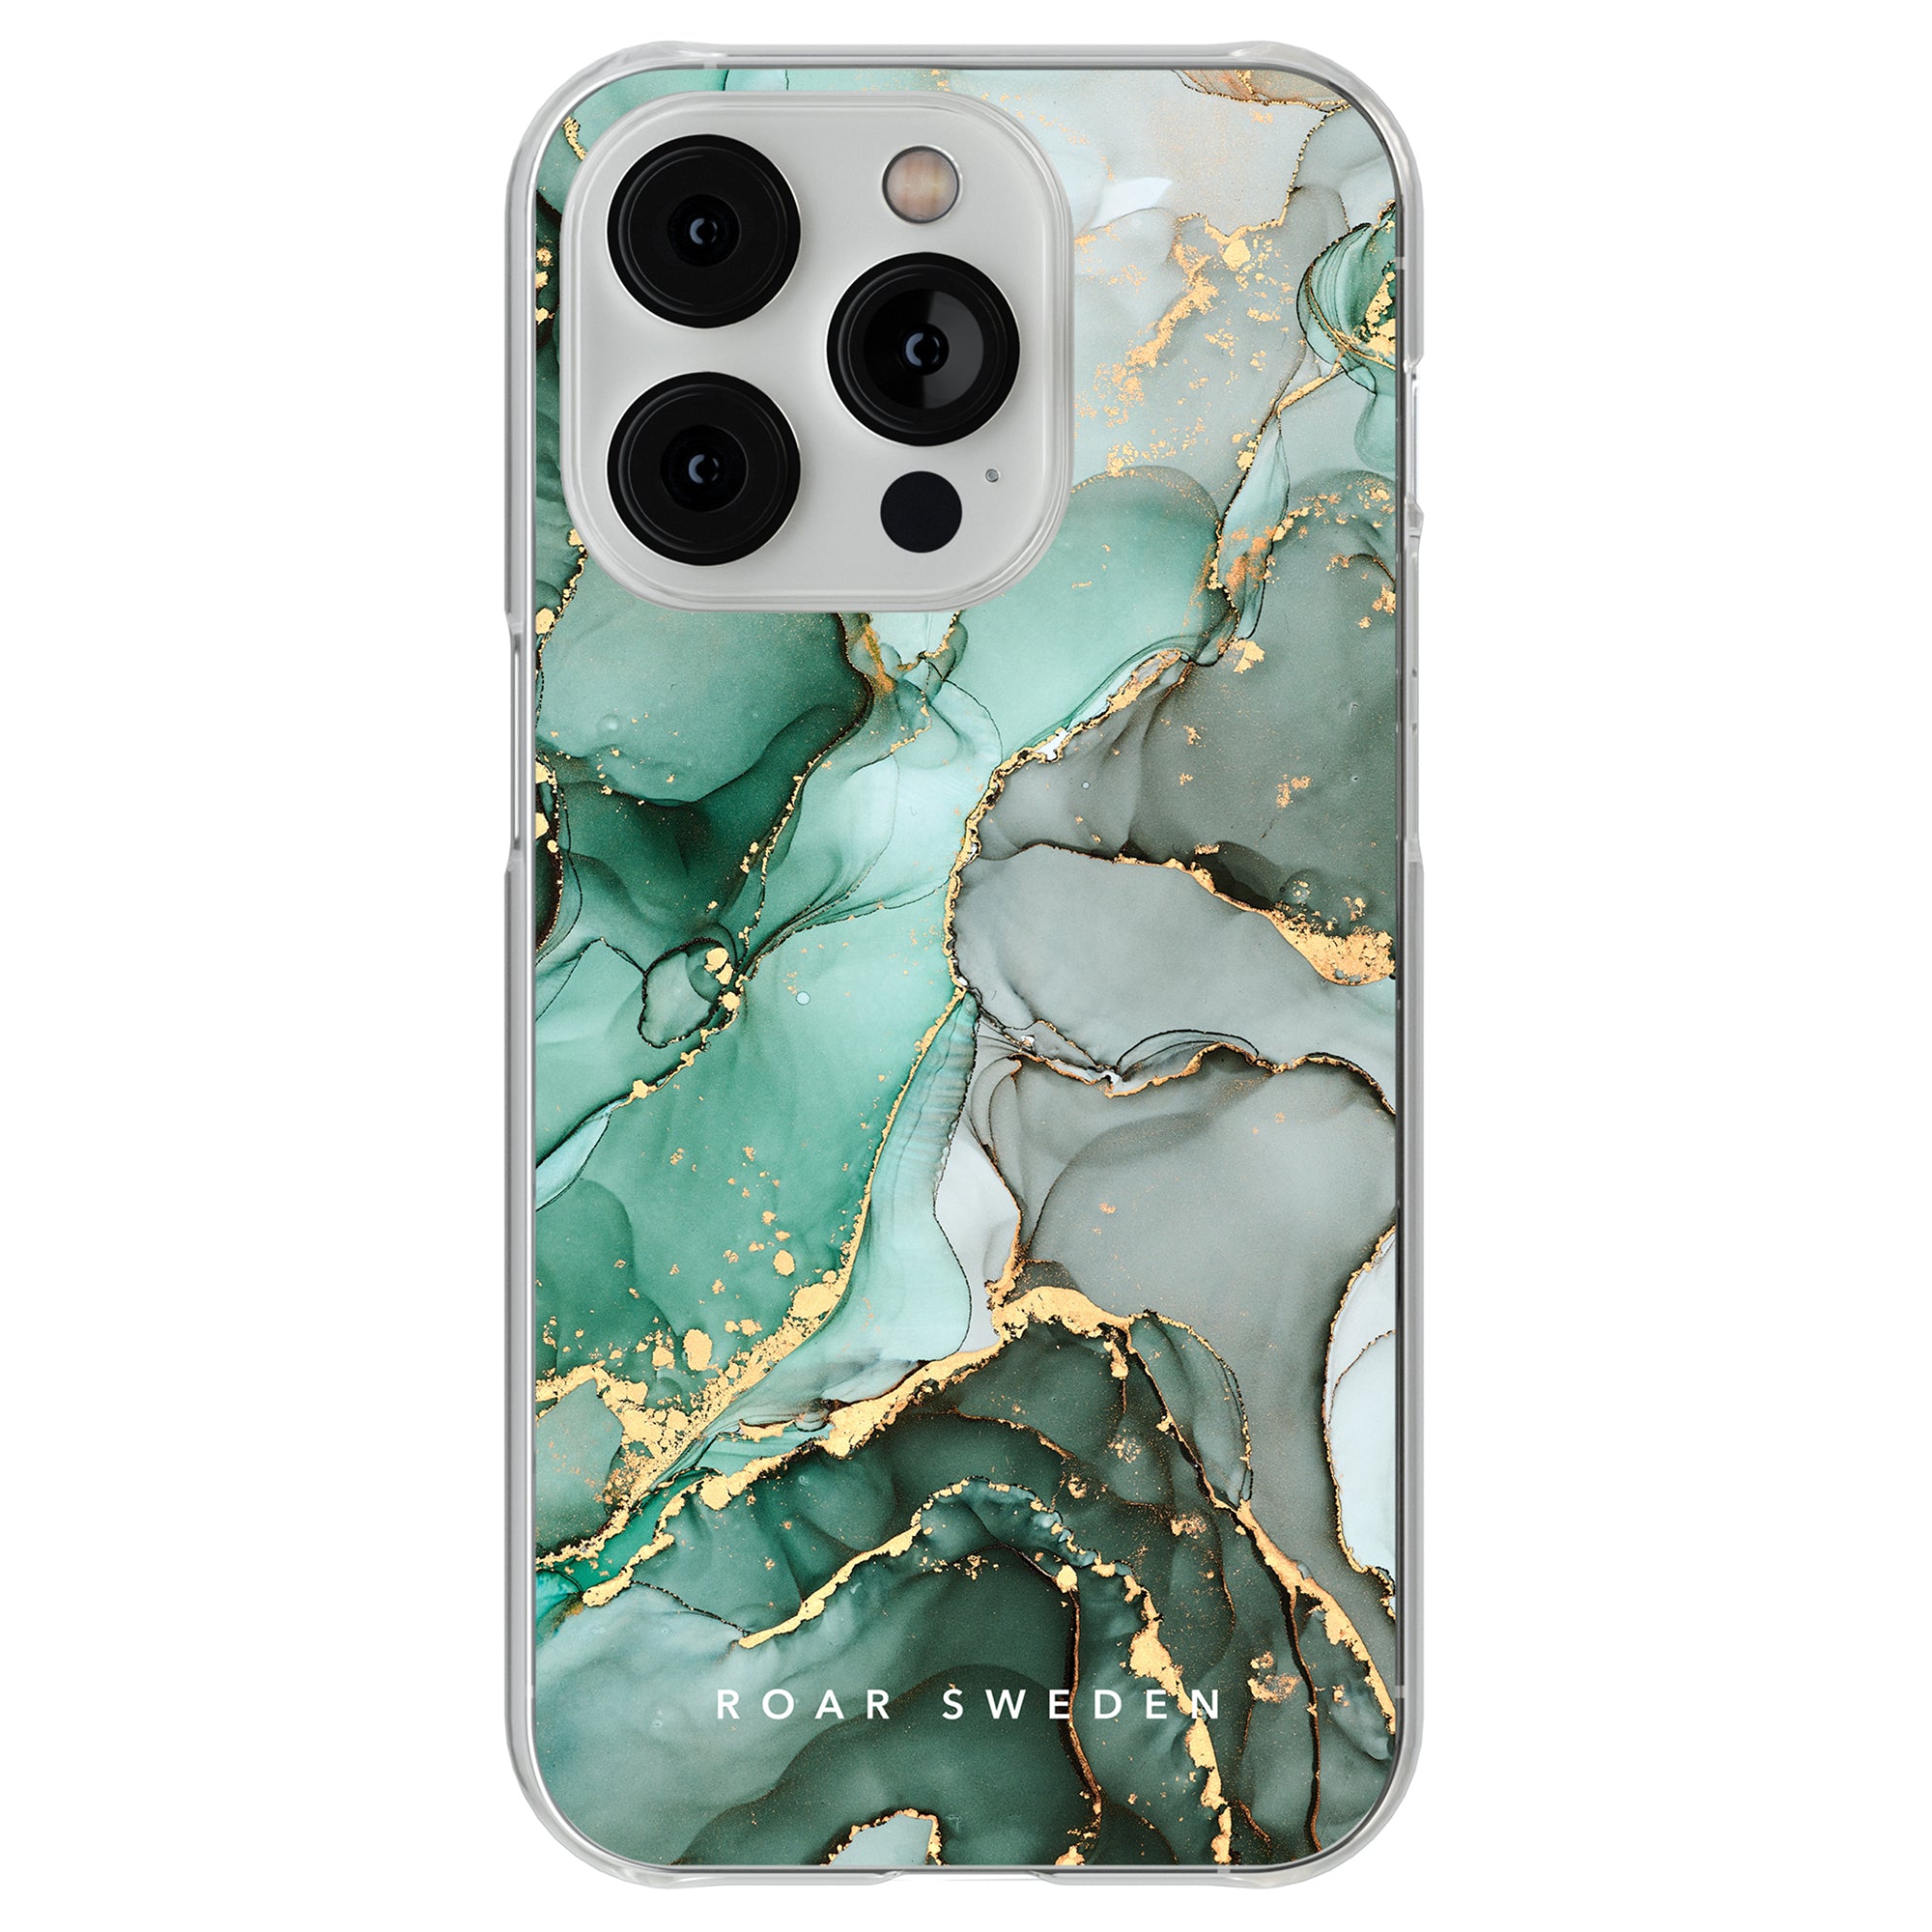 Ett Emerald - Clear Case speciellt designat för iPhone 11-smarttelefonen.